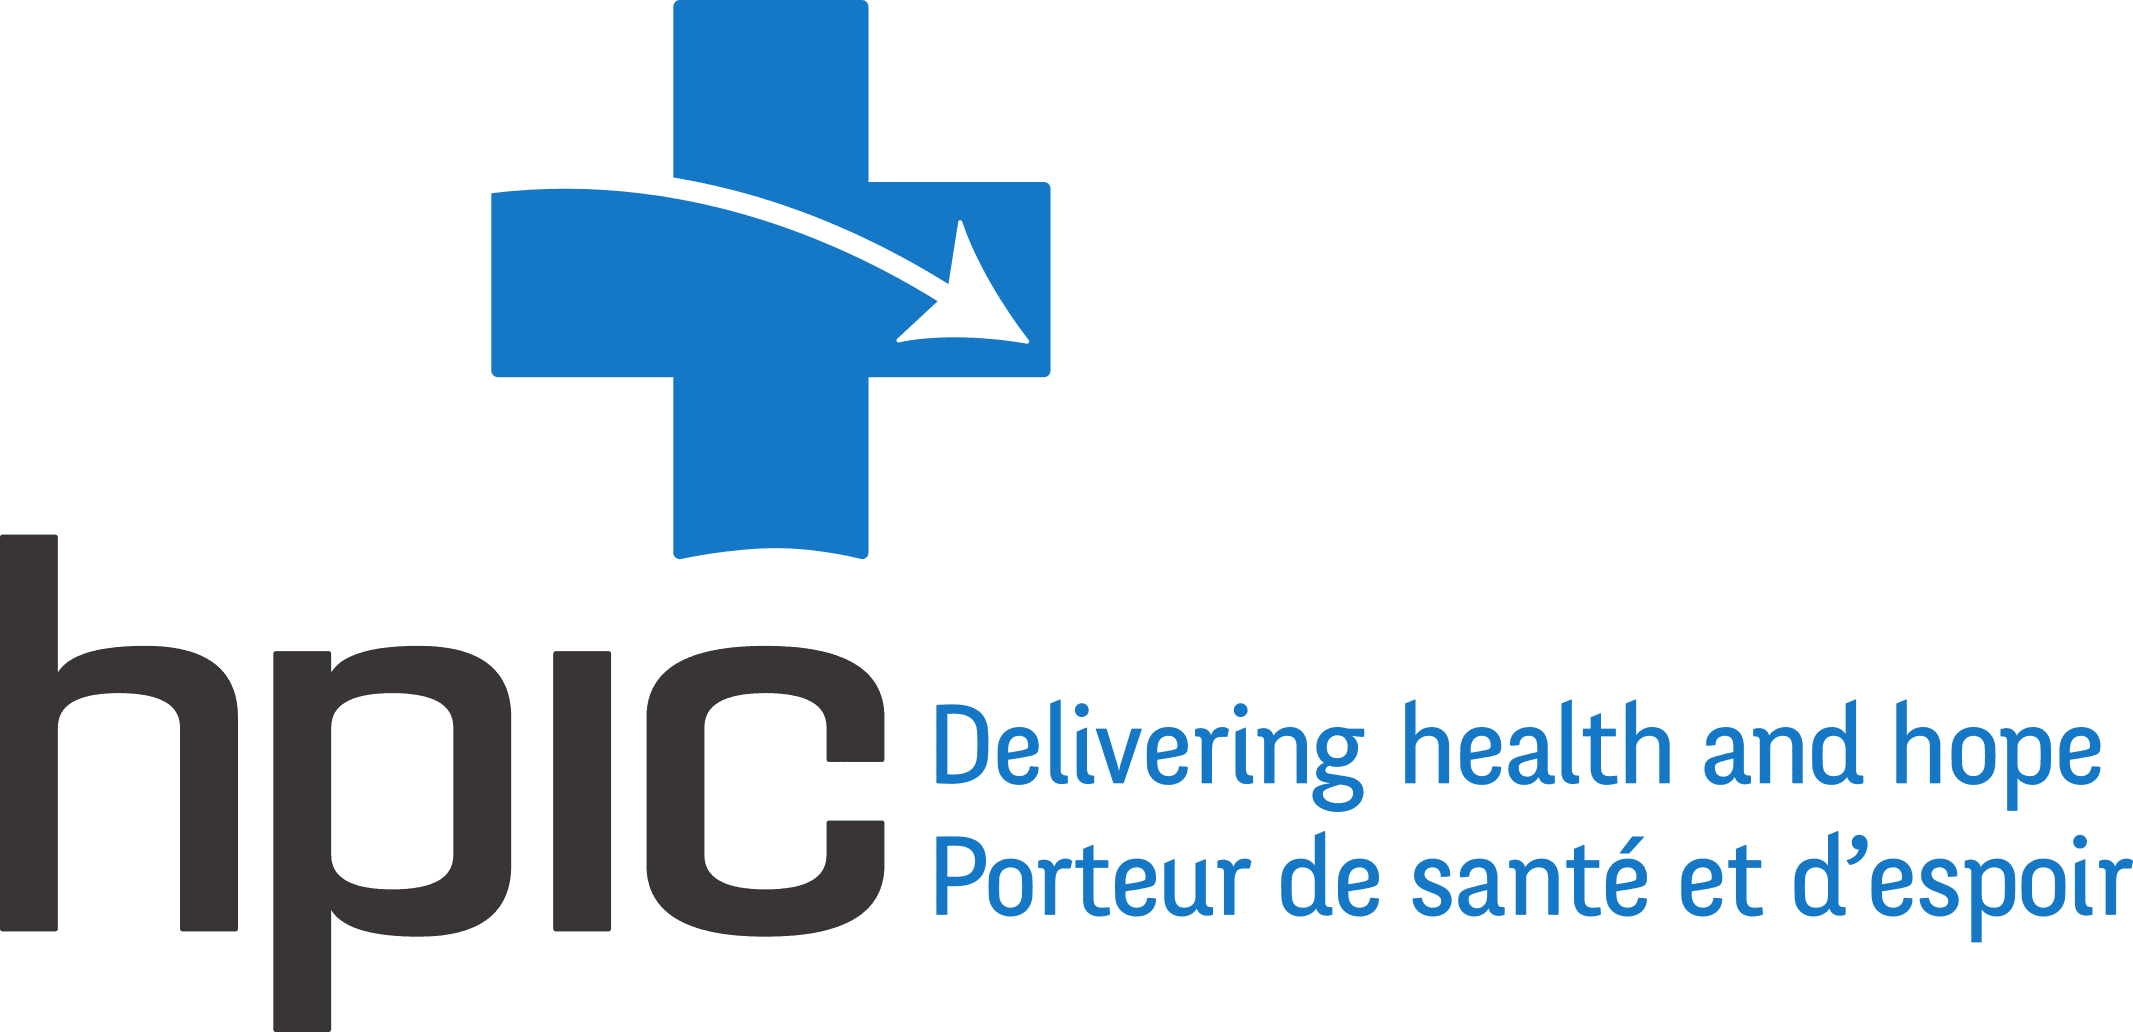 PCSI - logo de la santé et de l'espoir